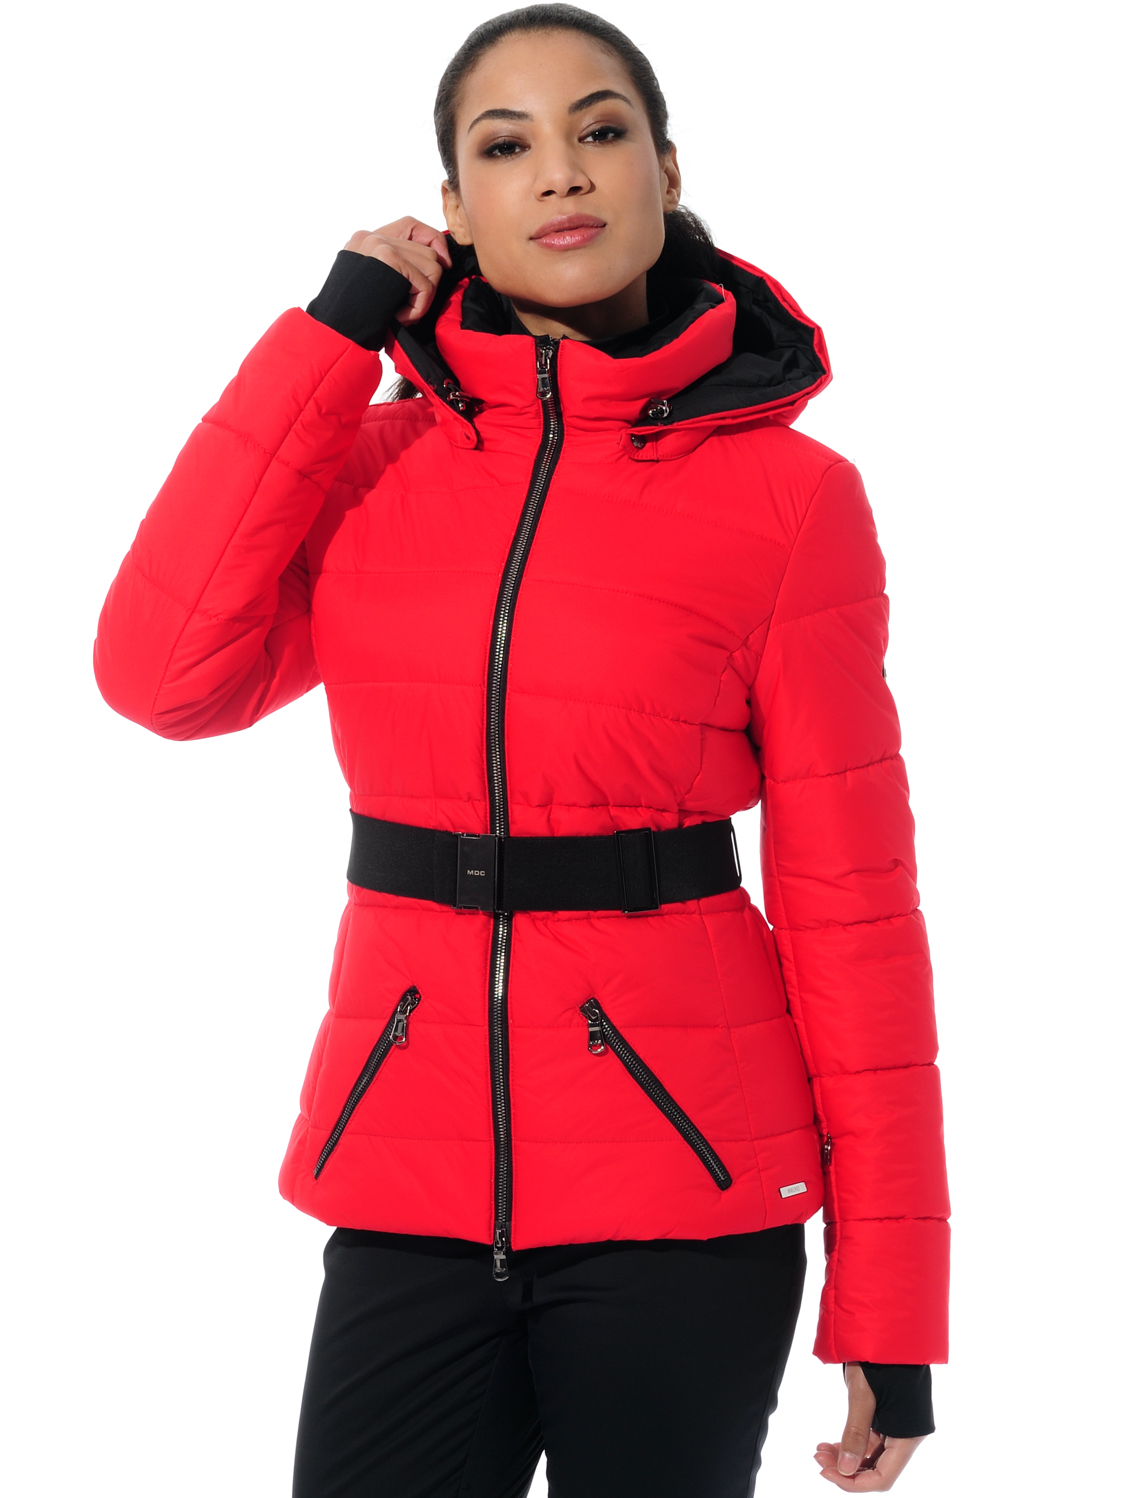 stretch ski jacket red 